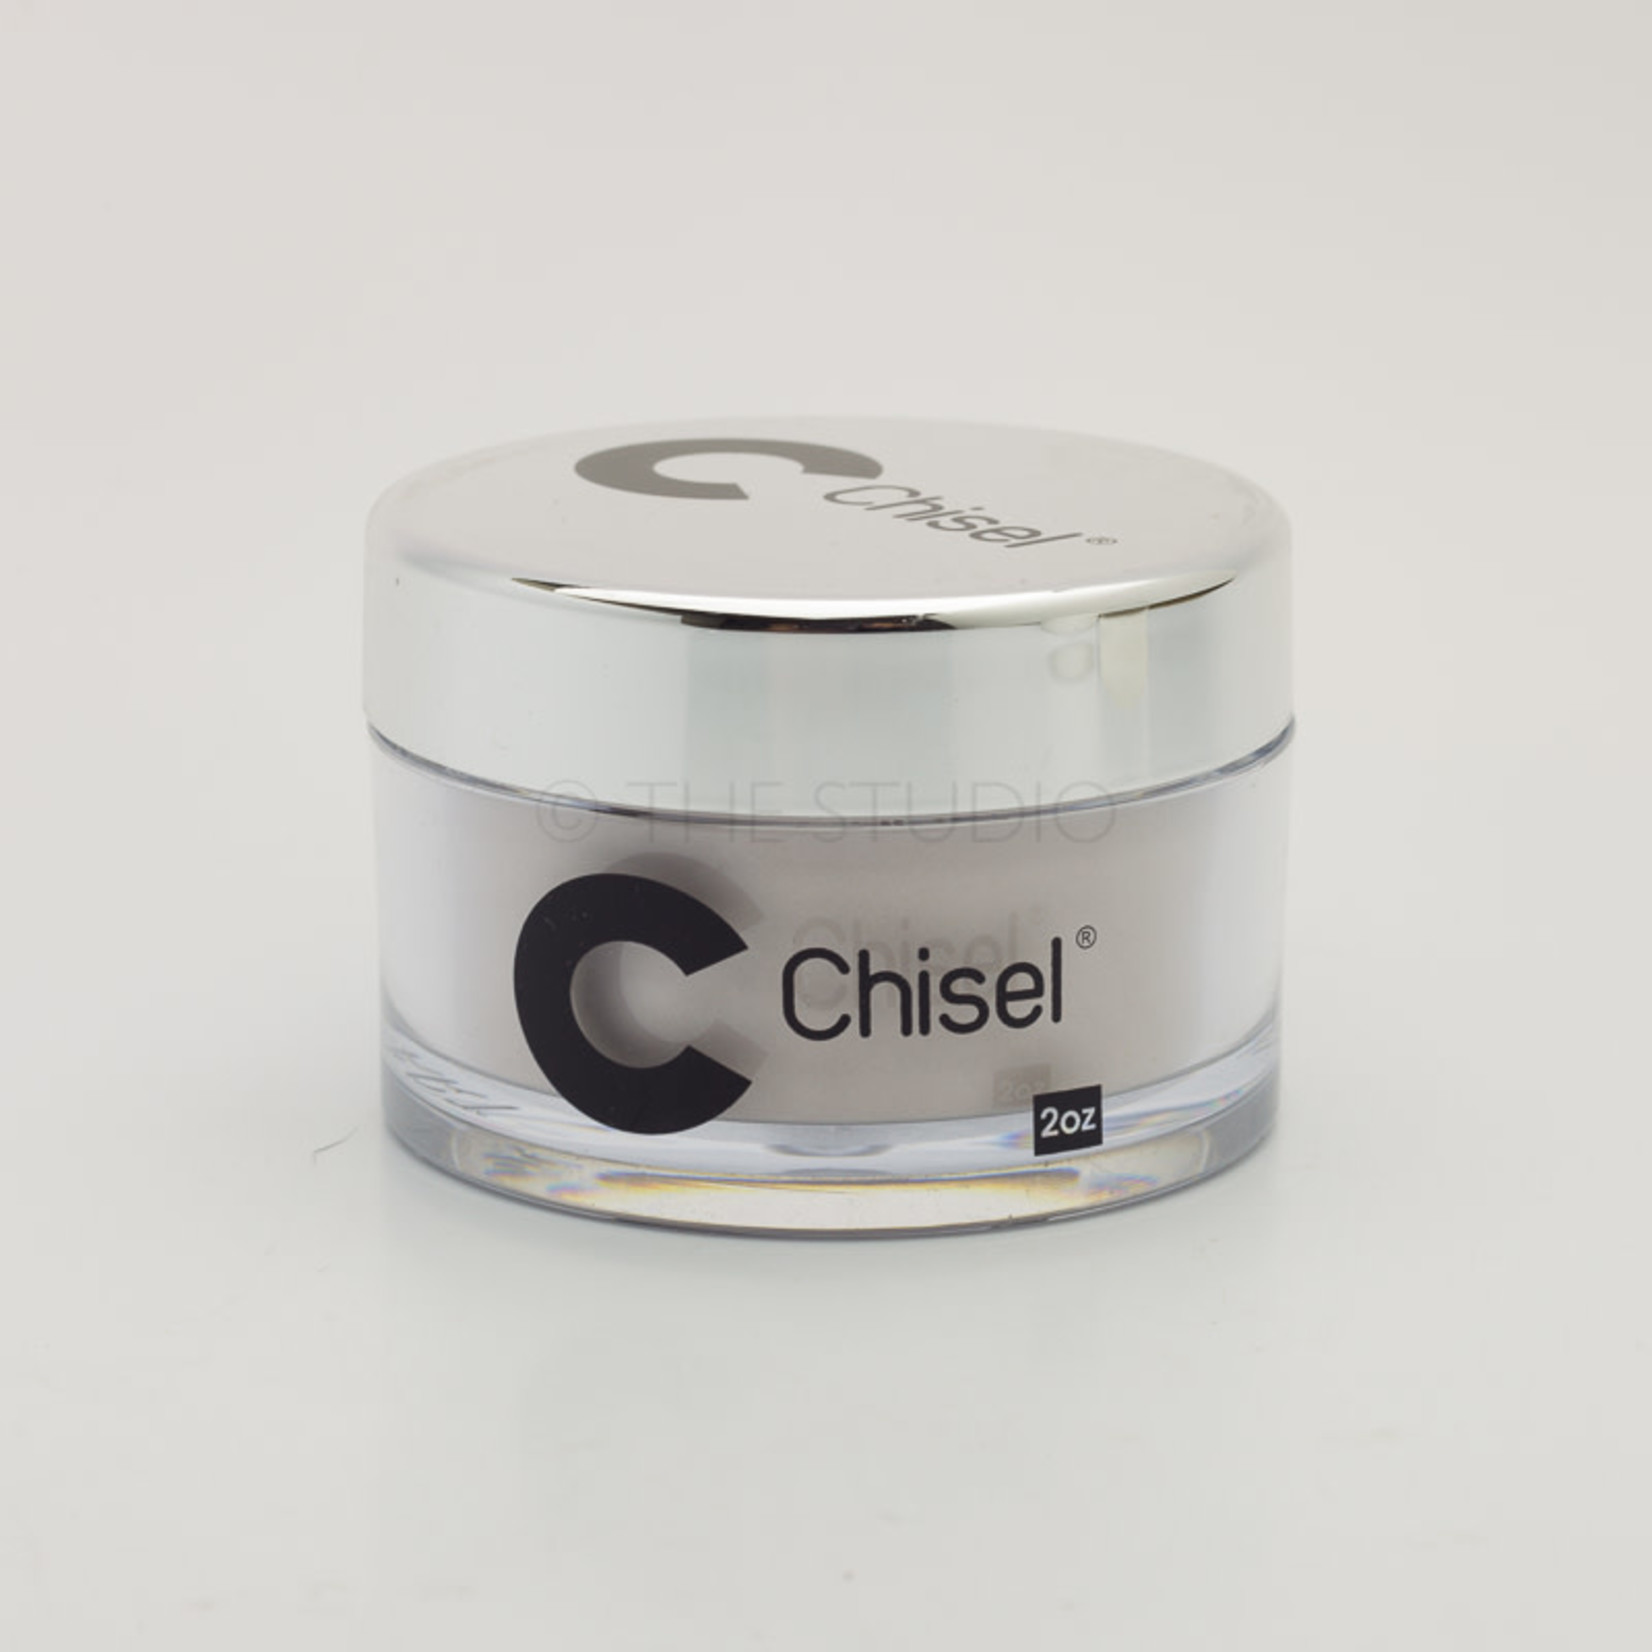 Chisel Chisel - Solid 107 - AIO Powder - 2 oz